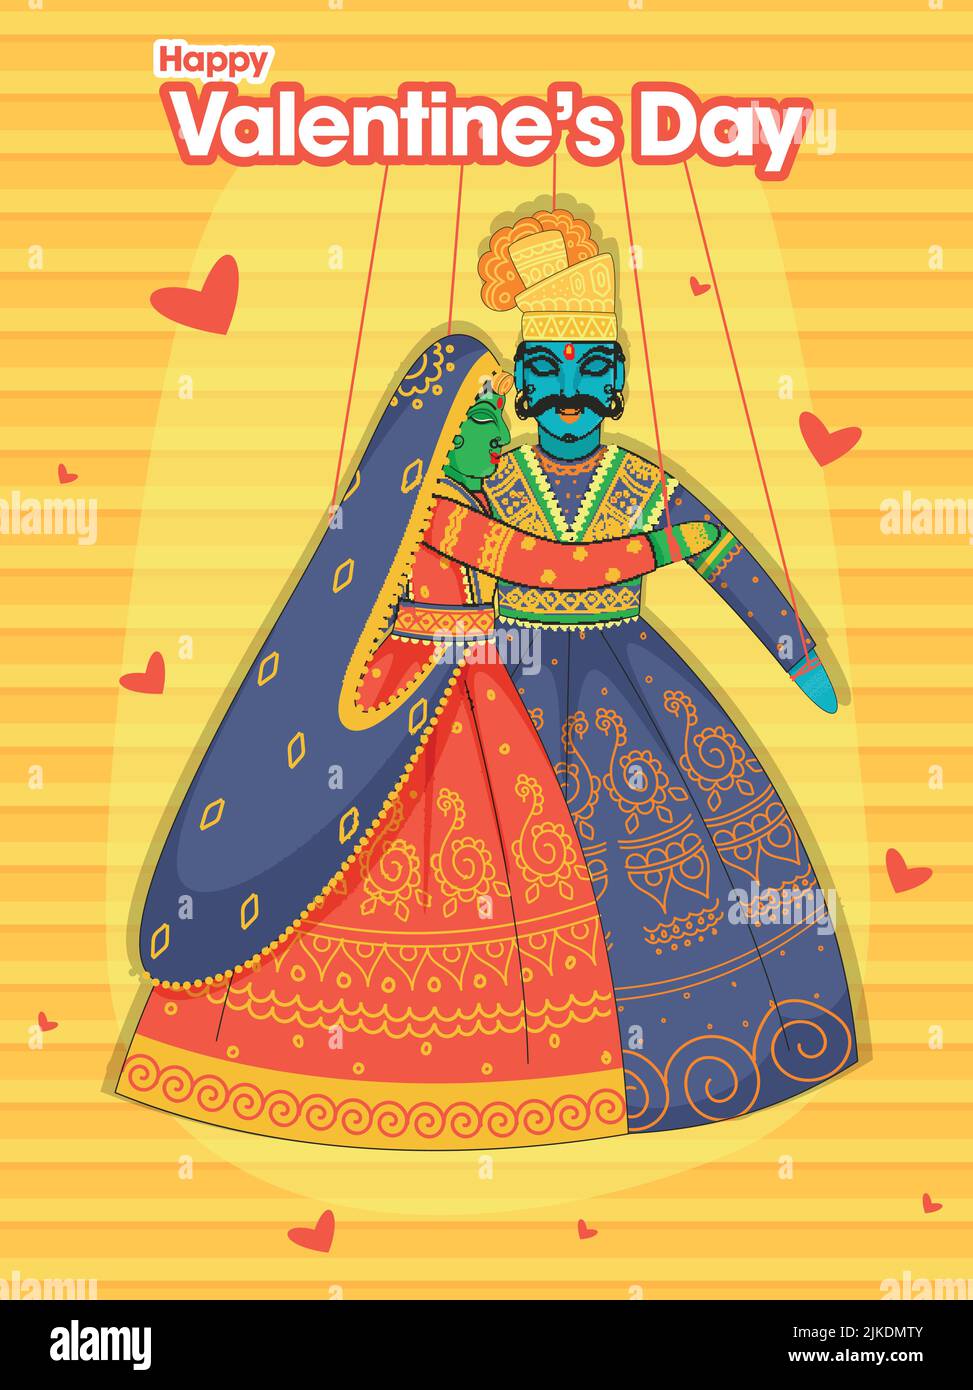 Carte de vœux de bonne Saint-Valentin avec cordon de couple de marionnettes Rajasthani sur fond à rayures jaune et orange. Illustration de Vecteur